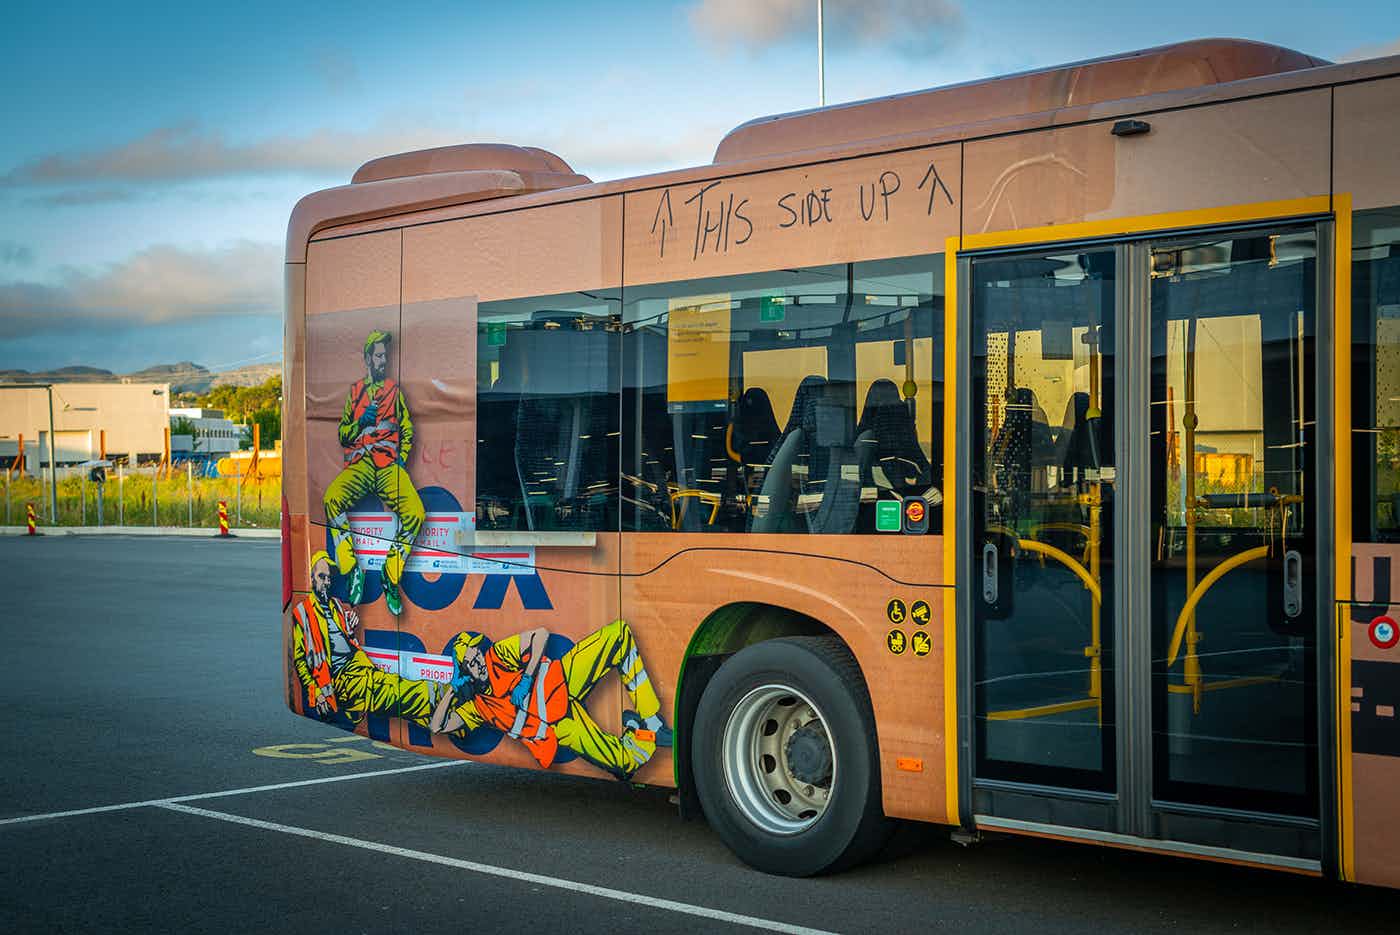 Kolumbus buses street art by Belgian artist Jaune